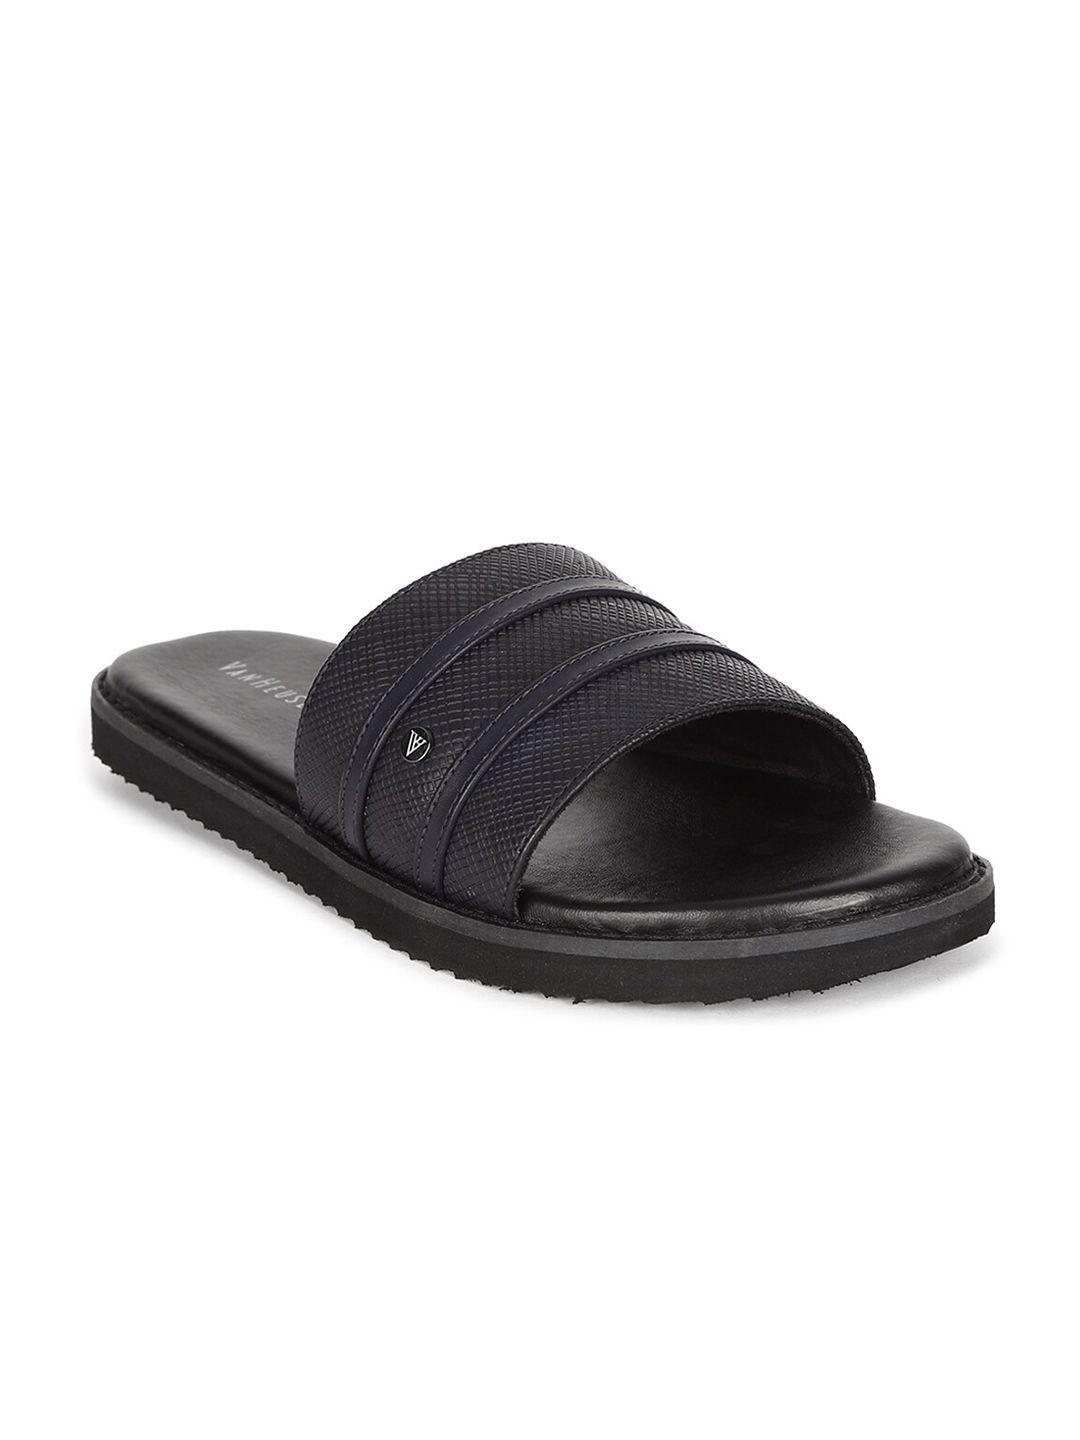 van heusen men black leather comfort sandals